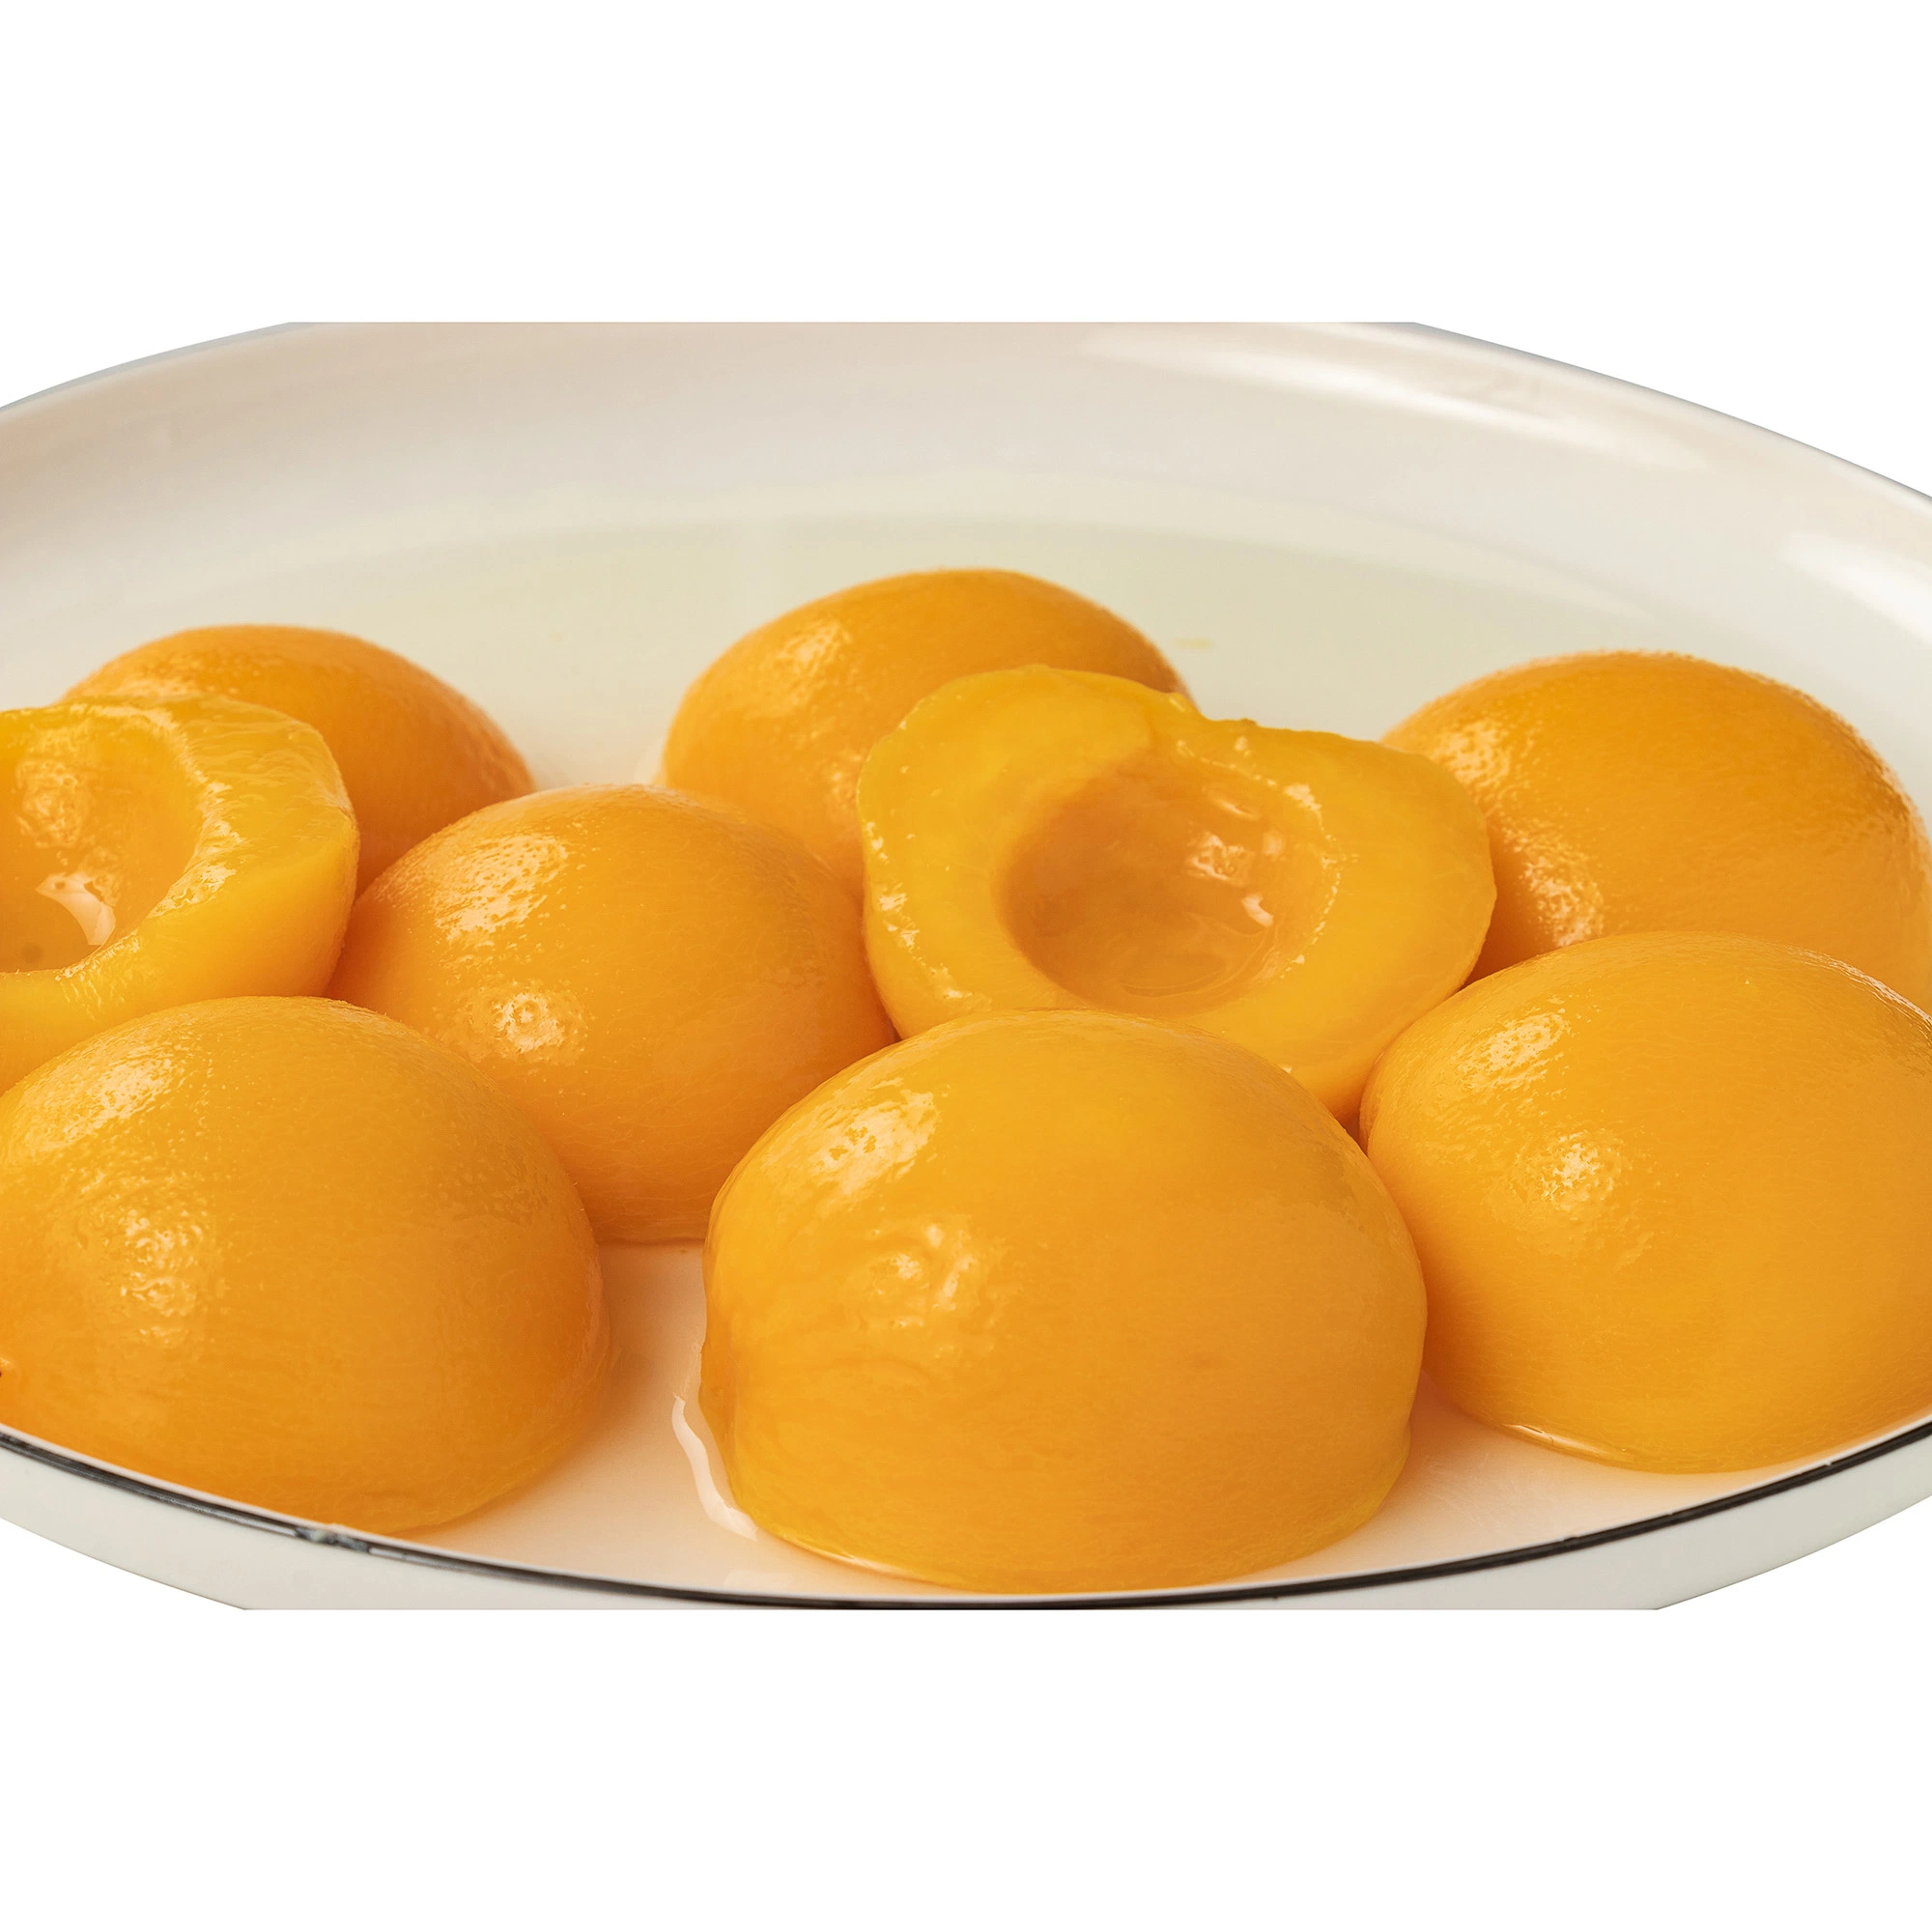 Консервированные фрукты консервированные свежие желтый персик половинки в легких и тяжелых сироп